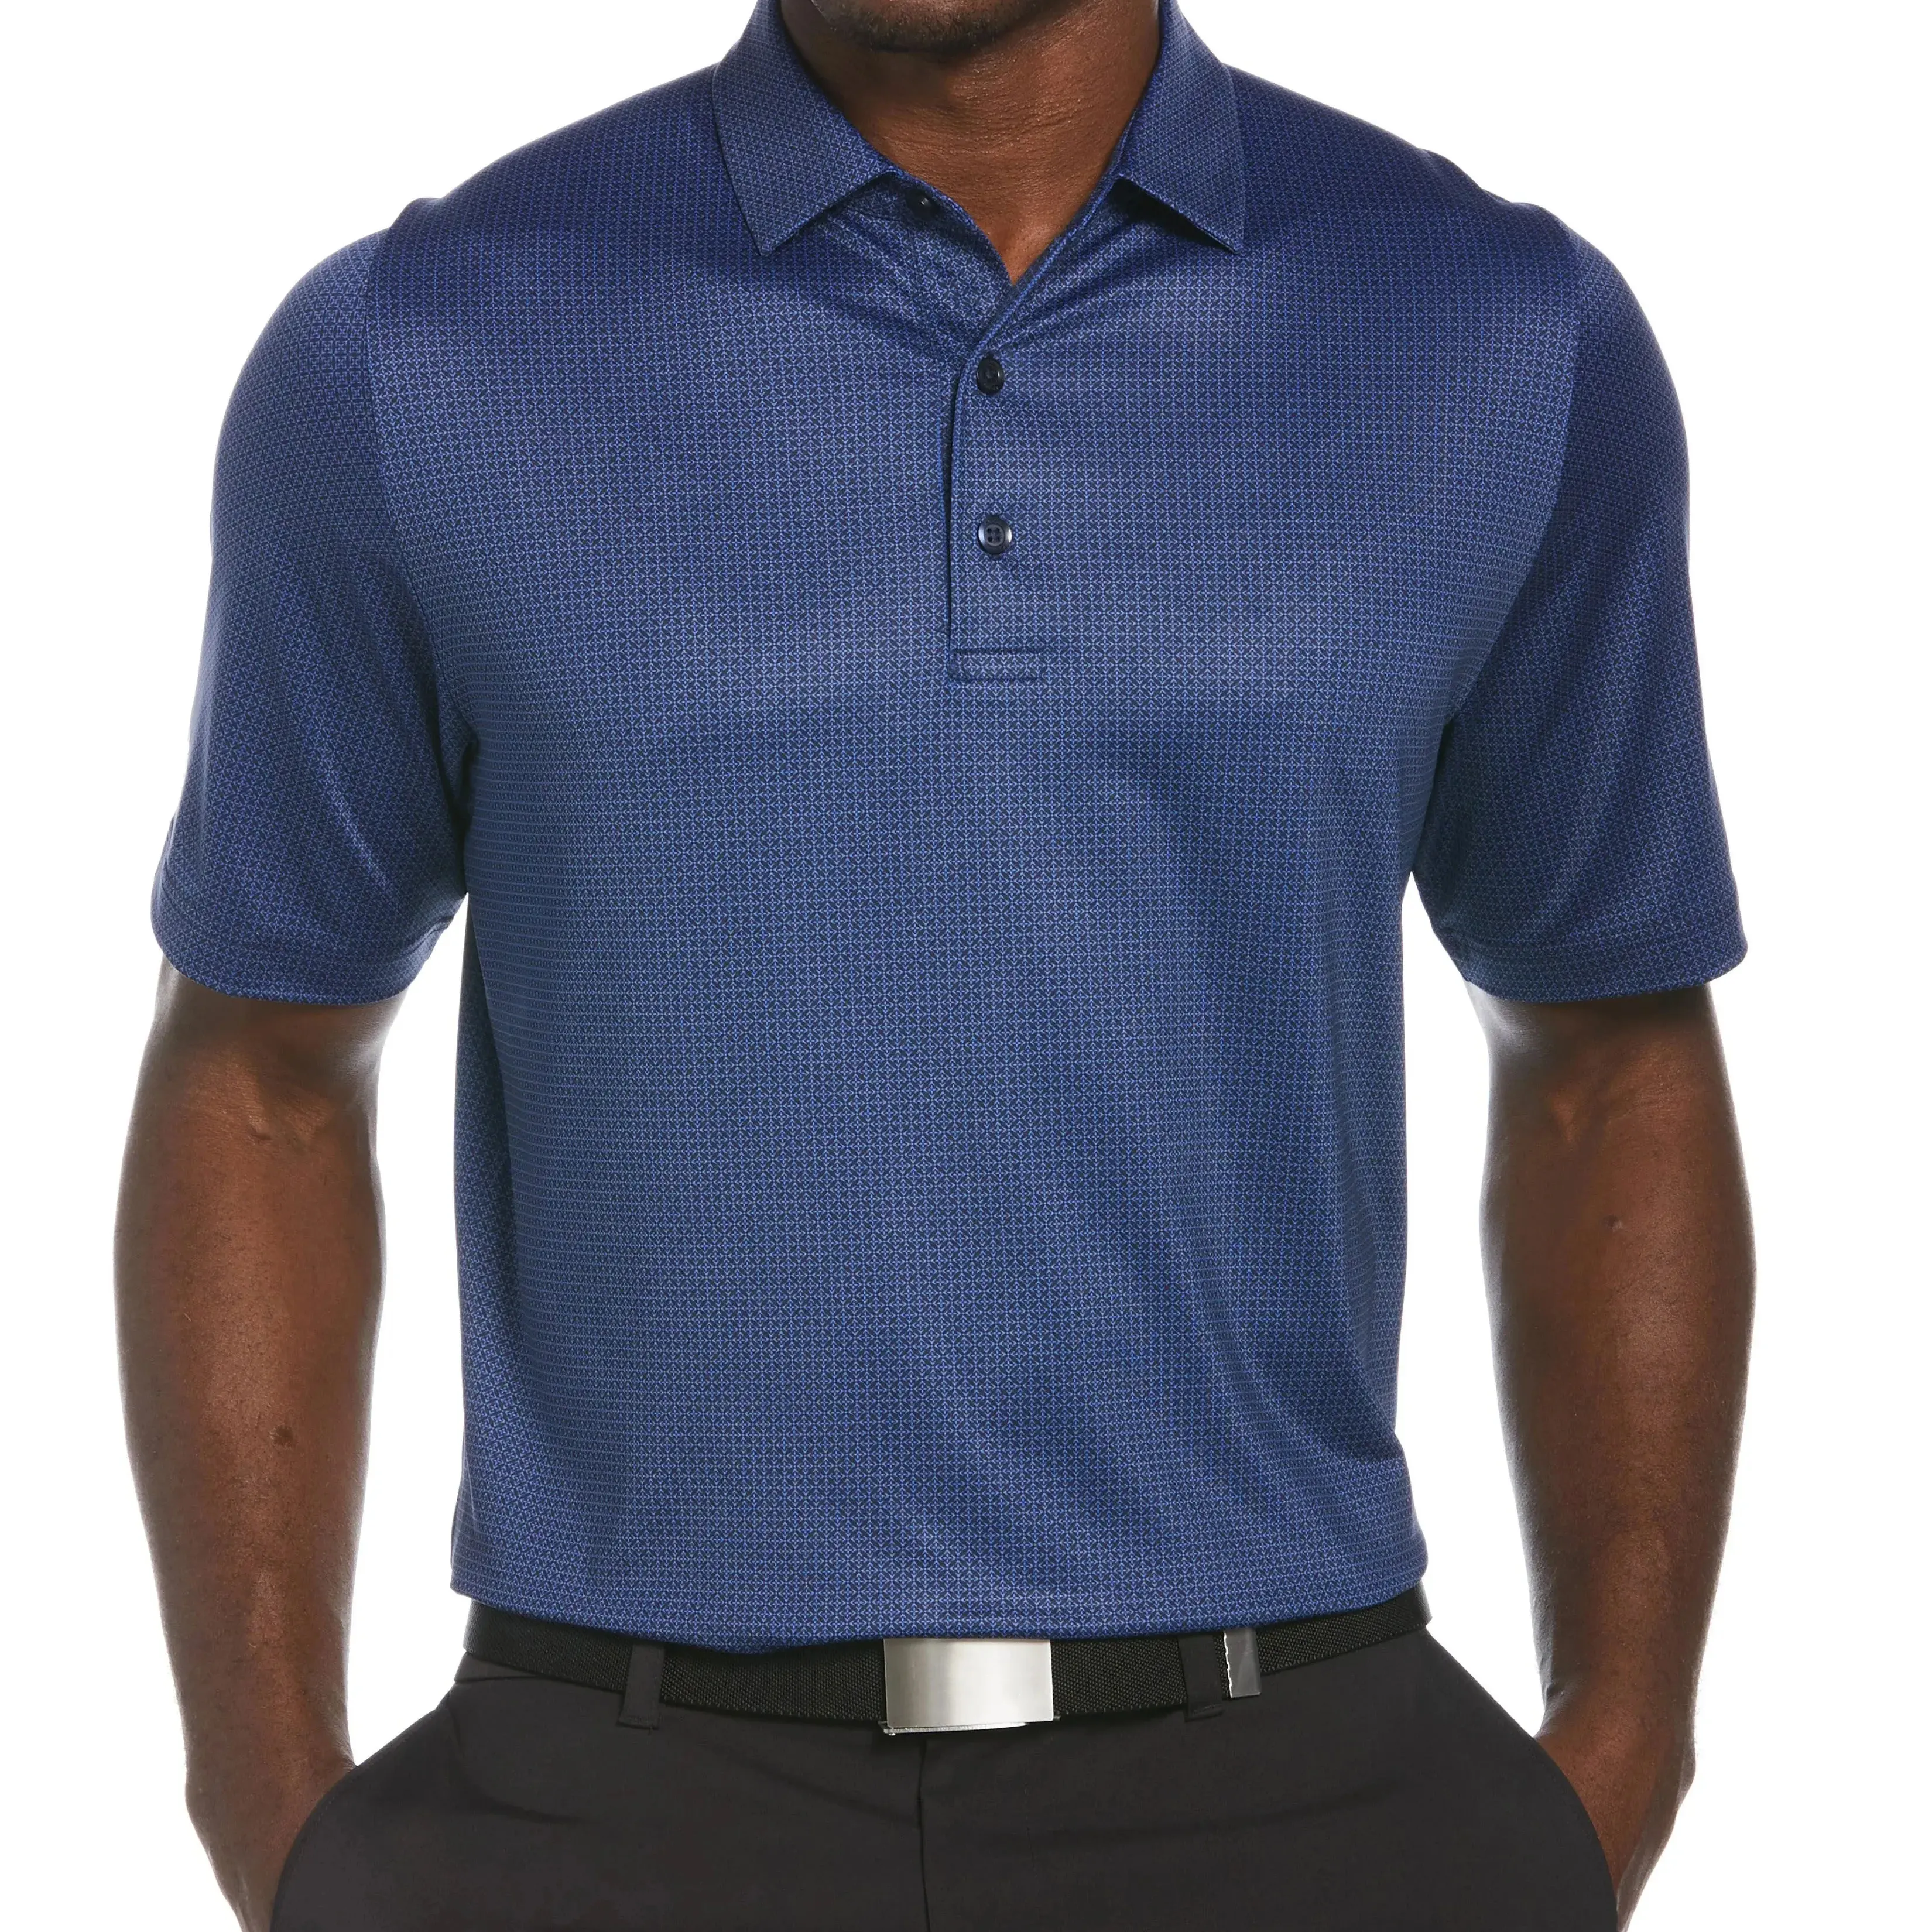 Camisa polo de golfe fantasia esportiva esportiva esportiva com listra camuflada spf50 Upf colorida para homens, roupa de lapela personalizável e atlética, fantasia marinha incrível